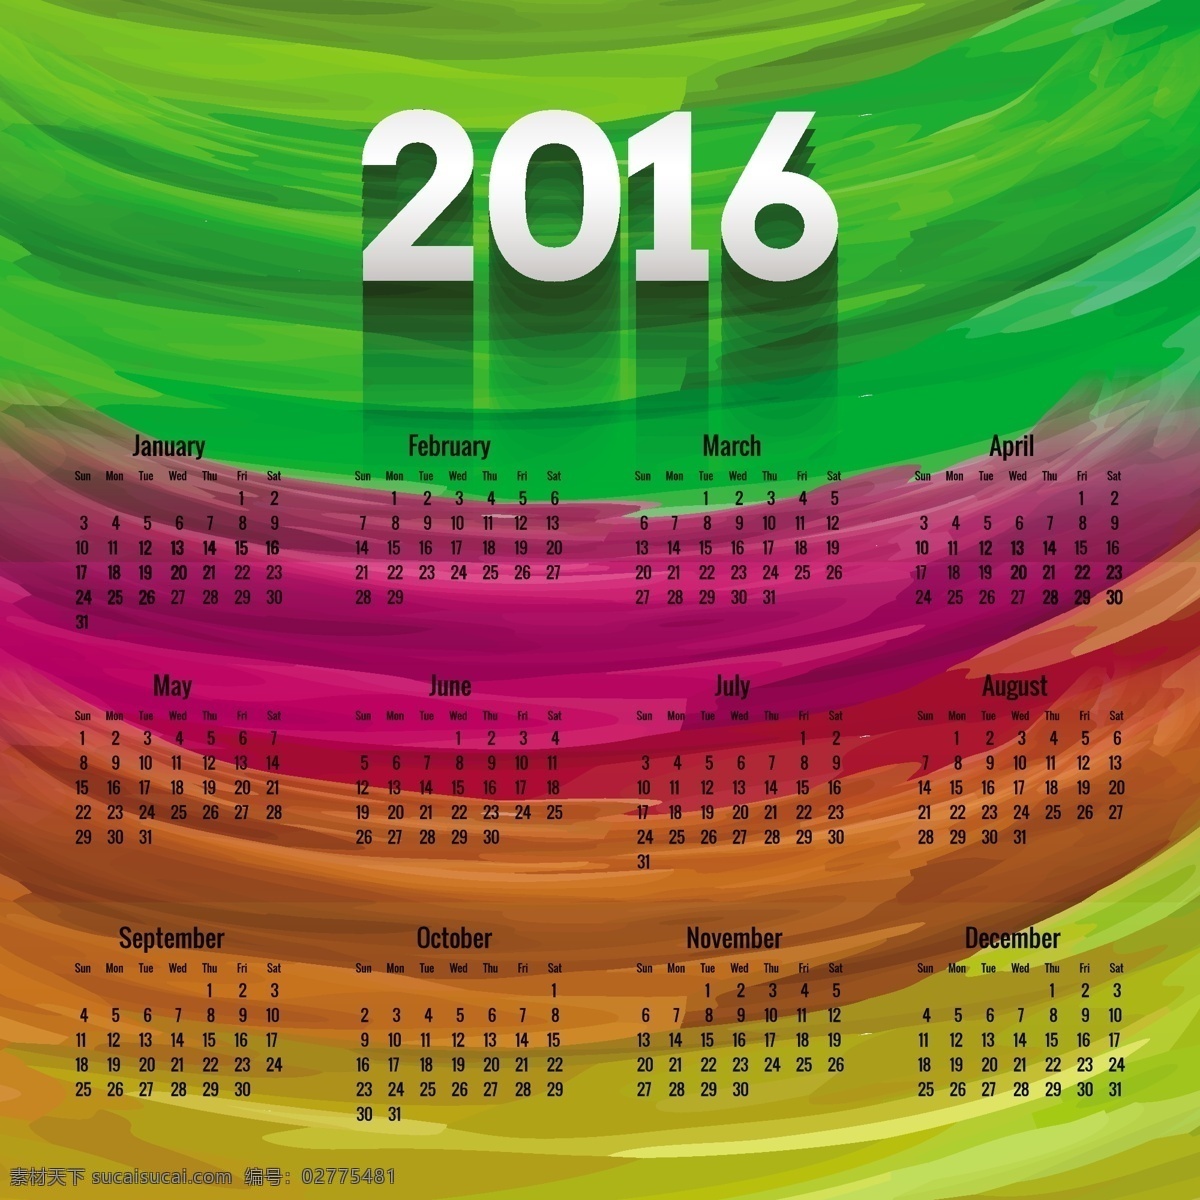 彩色 2016 日历 手绘 风格 水彩 模板 油漆 时间 数字 丰富多彩 计划 年 日期 时间表 日记 日 月 周 手画 组织者 绿色